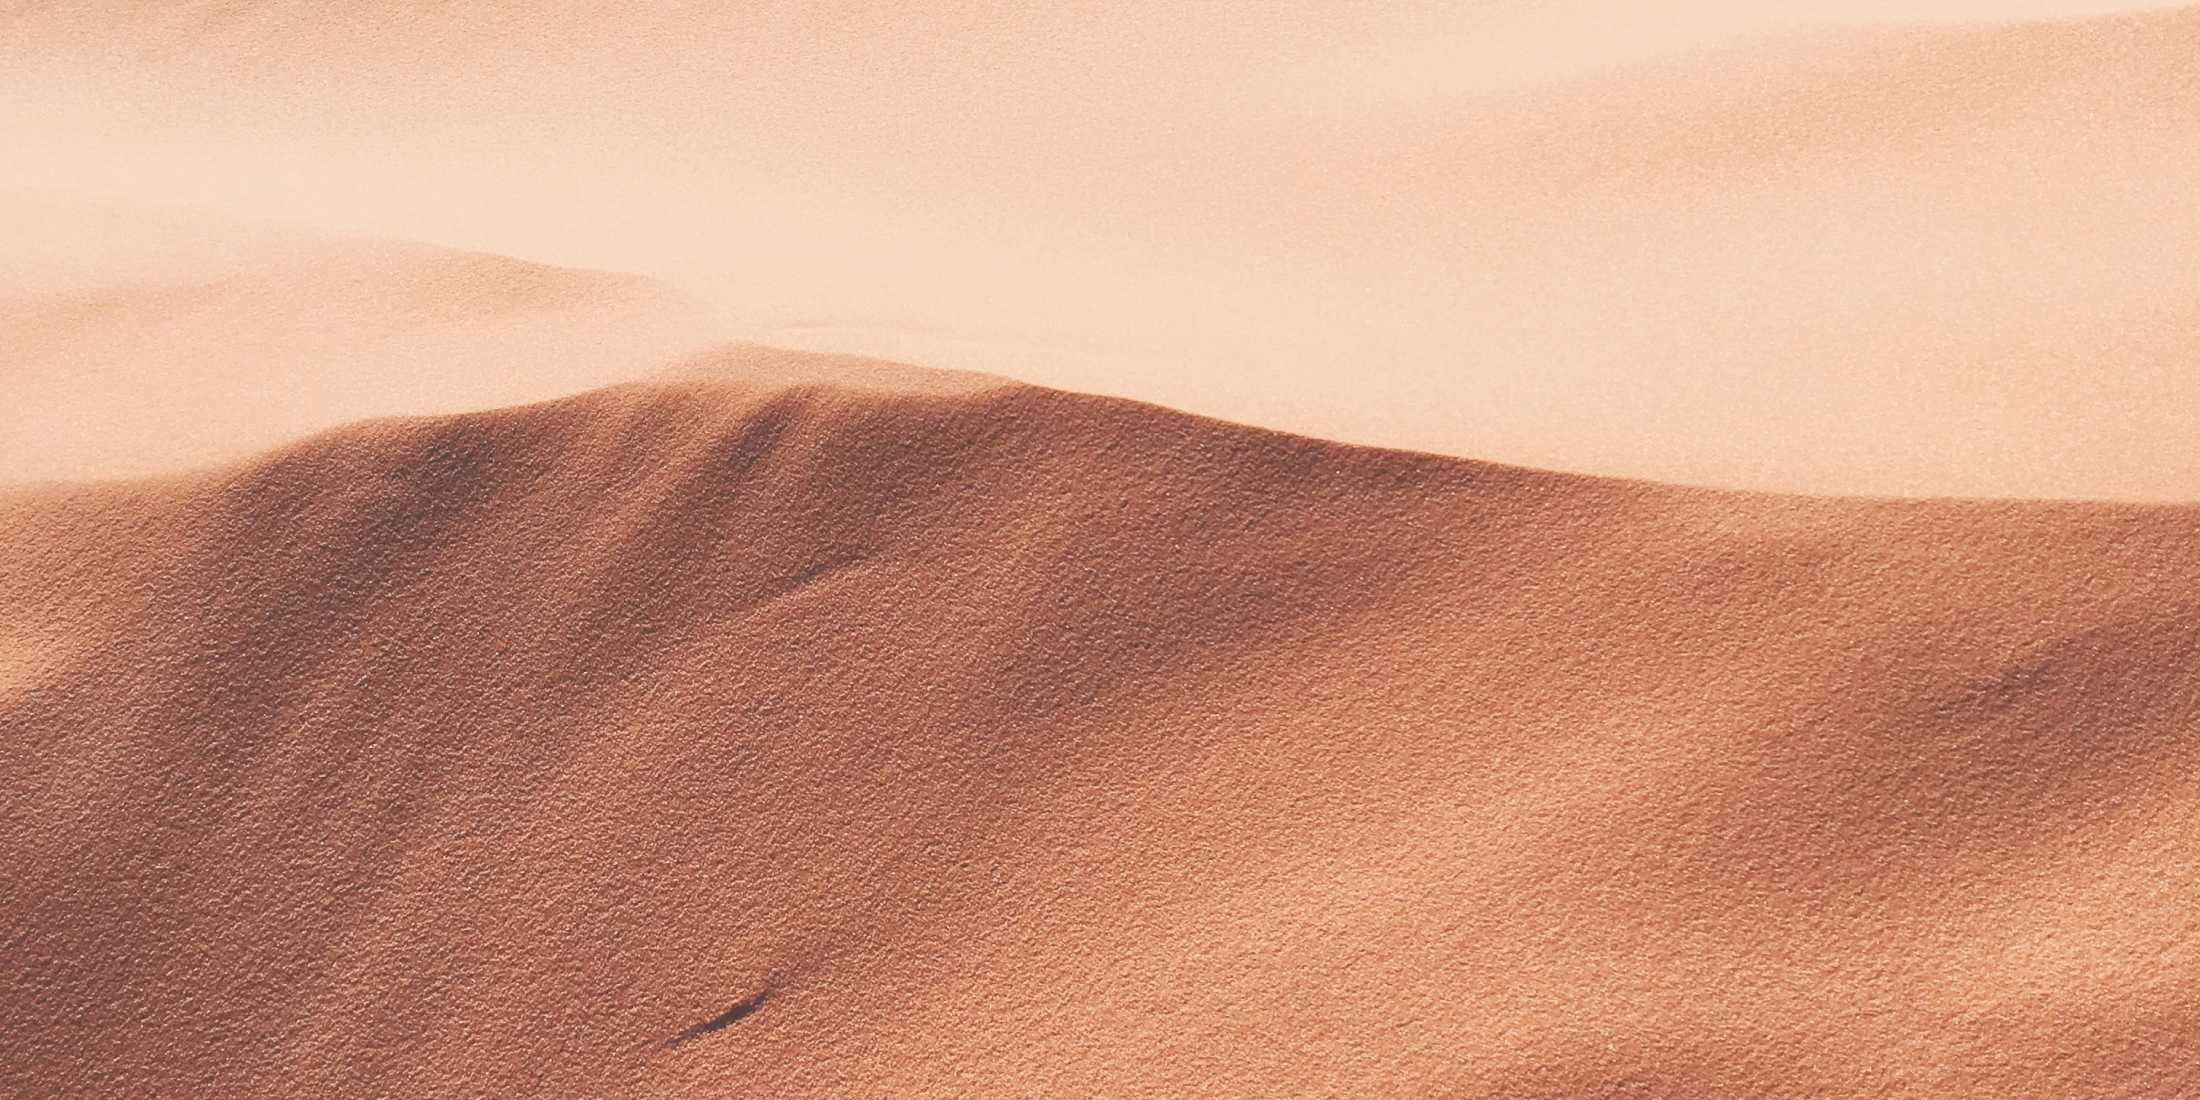 Bild von einer Wüste